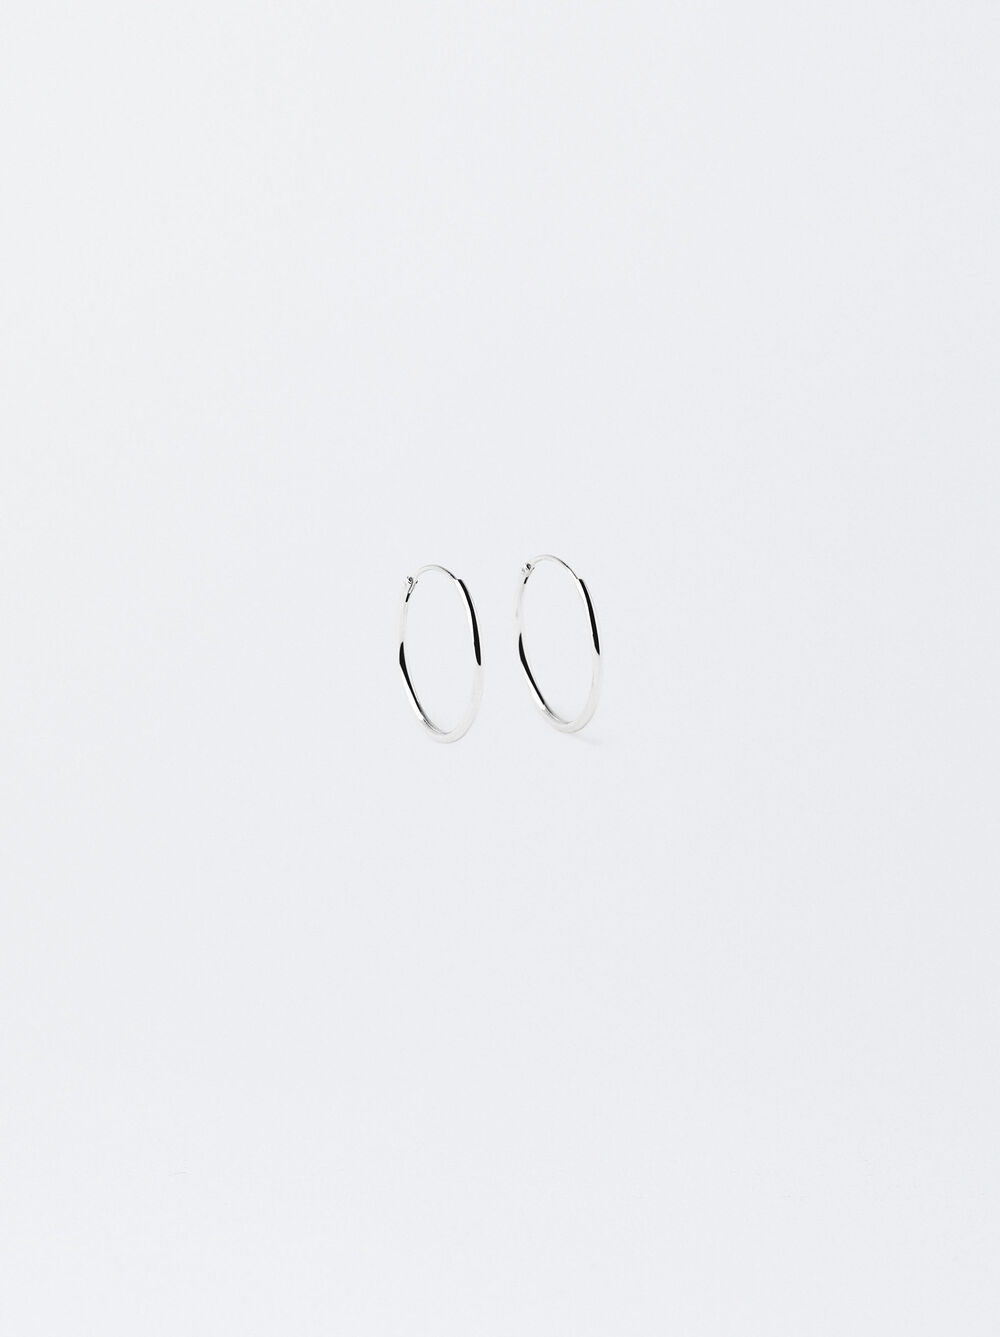 Short 925 Silver Hoop Earrings